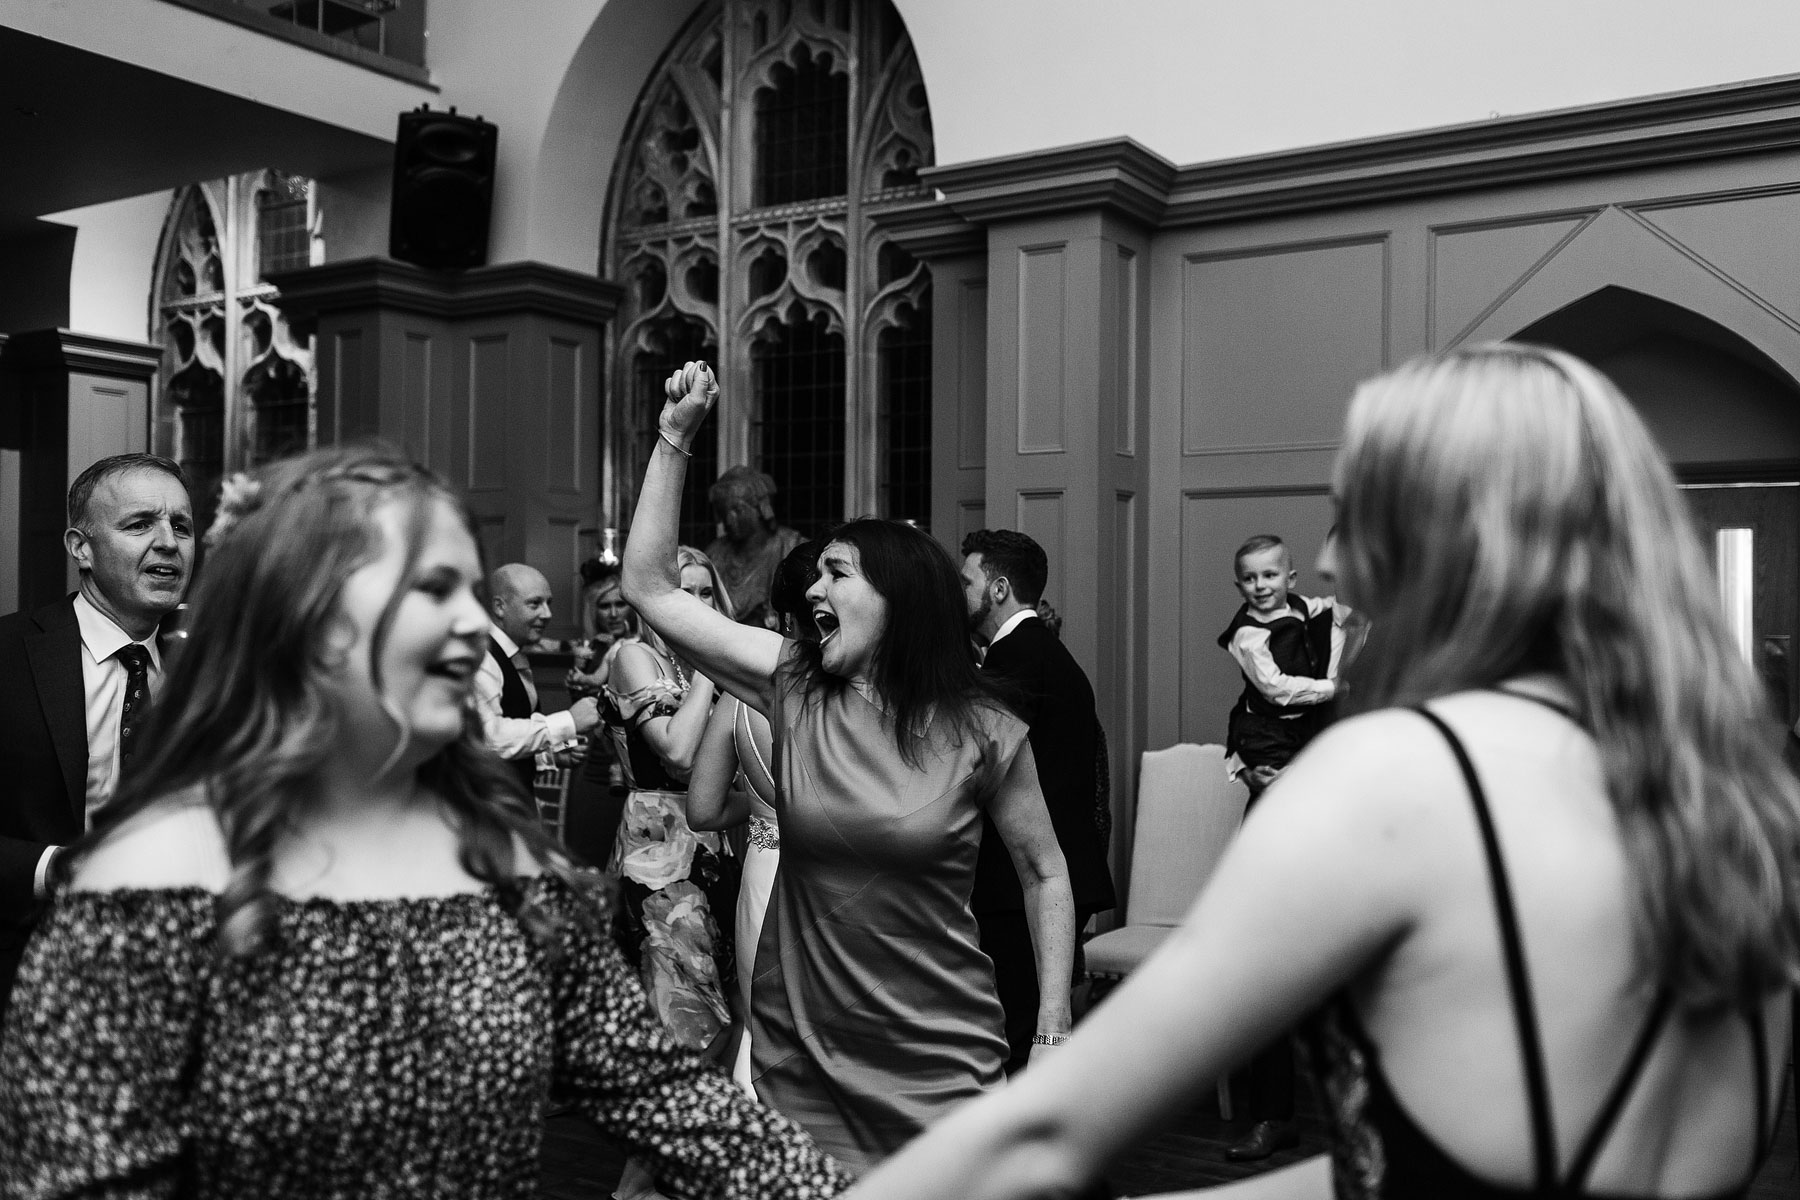 fun dancing images at a uk wedding